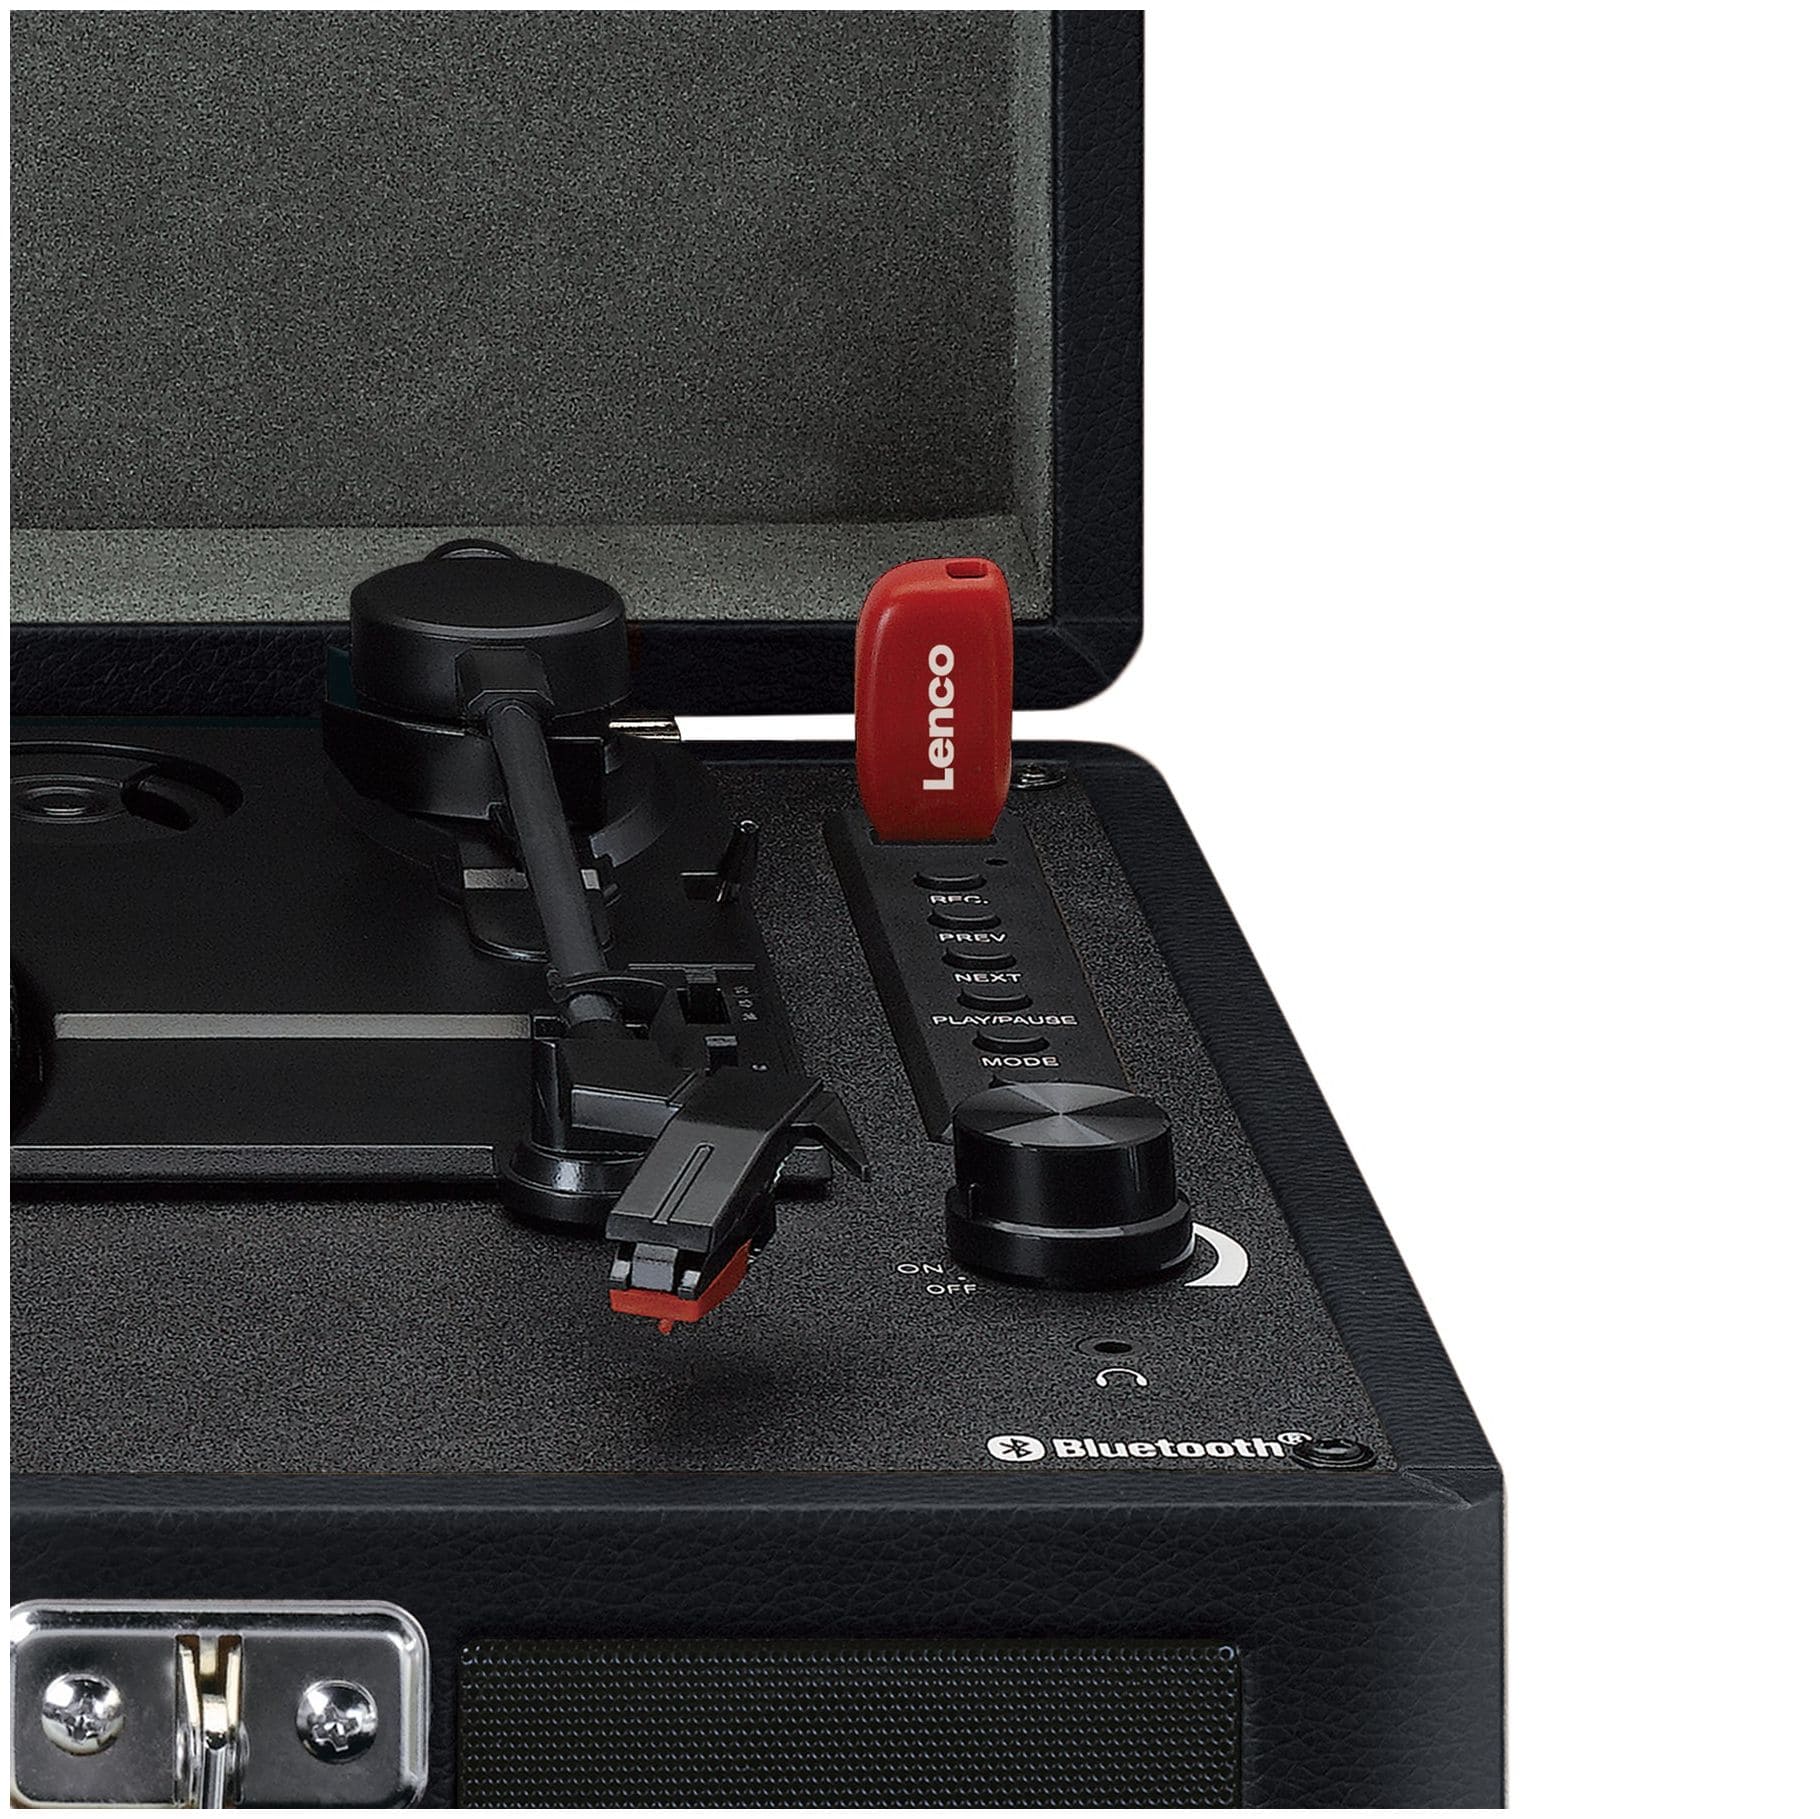 Riemenantrieb mit Lenco (Schwarz) Audio-Plattenspieler Boomstore TT-115 bei